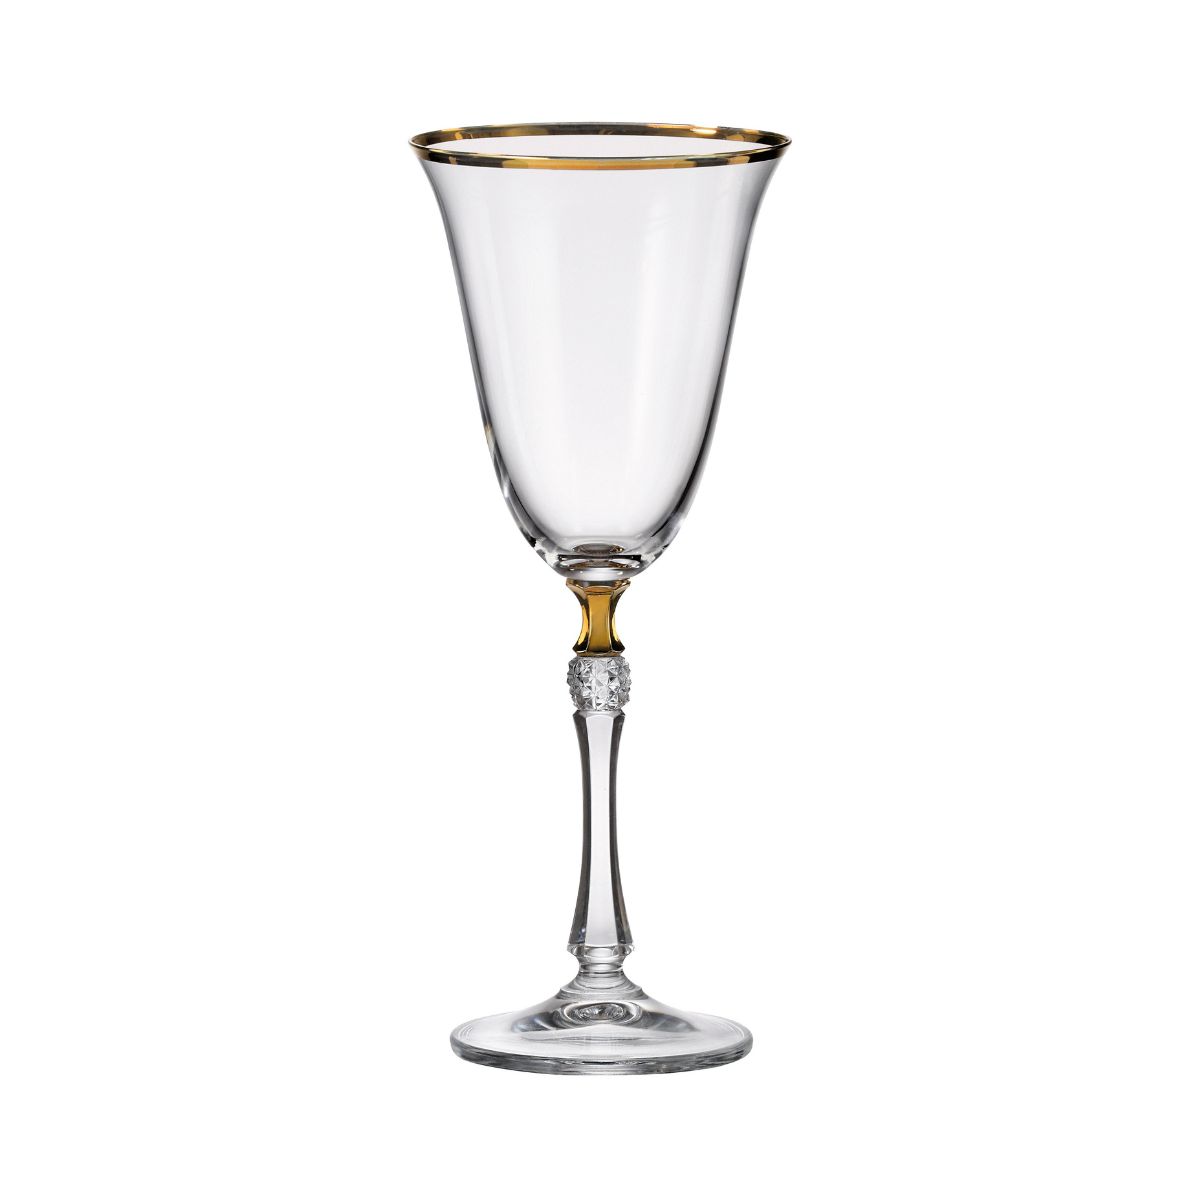 Bucatarie - Set de 6 pahare pentru vin alb, transparent, din cristal de Bohemia, 350 ml, Zoya, hectarul.ro